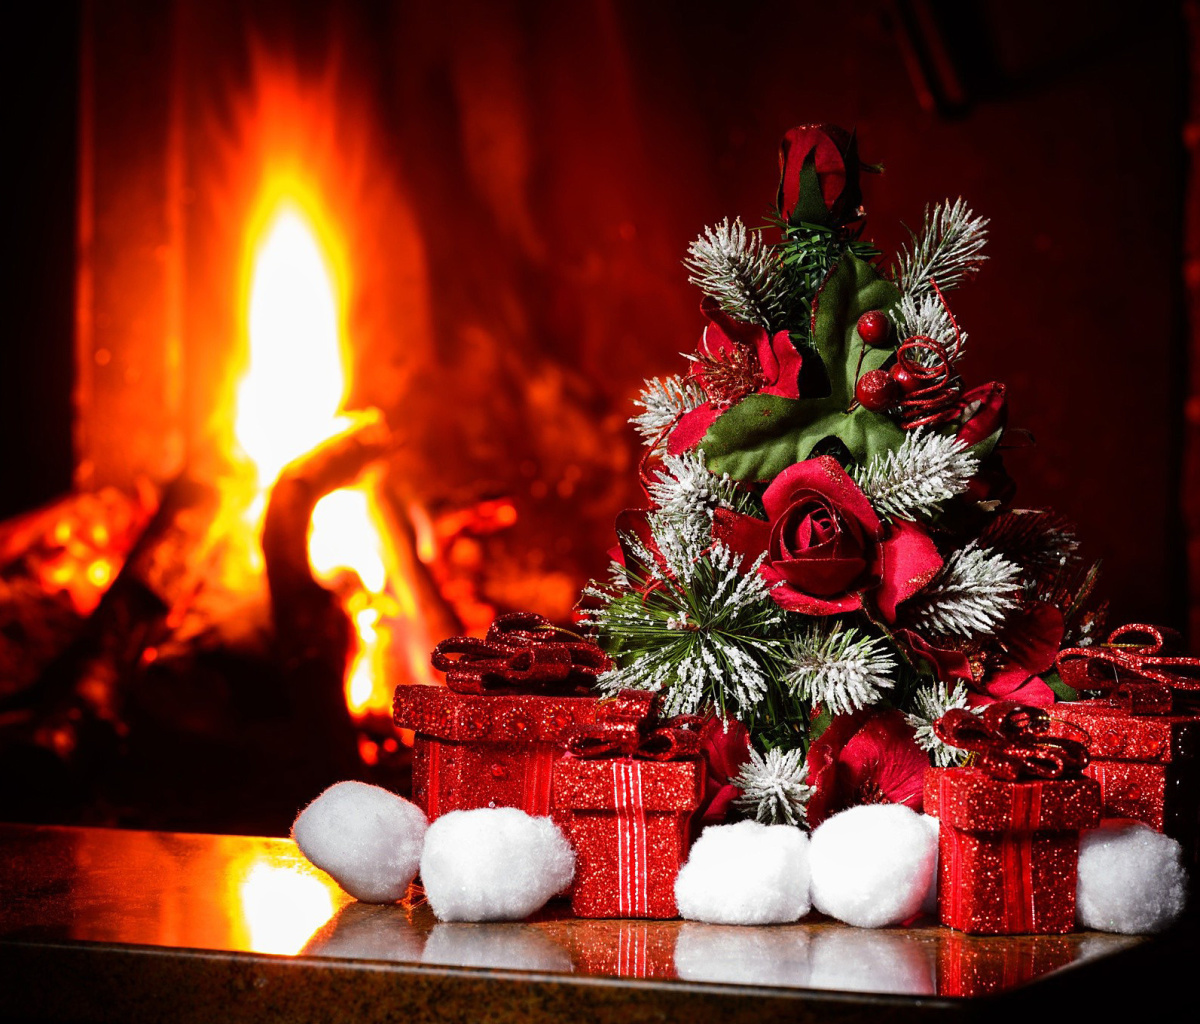 Das Christmas near Fireplace Wallpaper 1200x1024